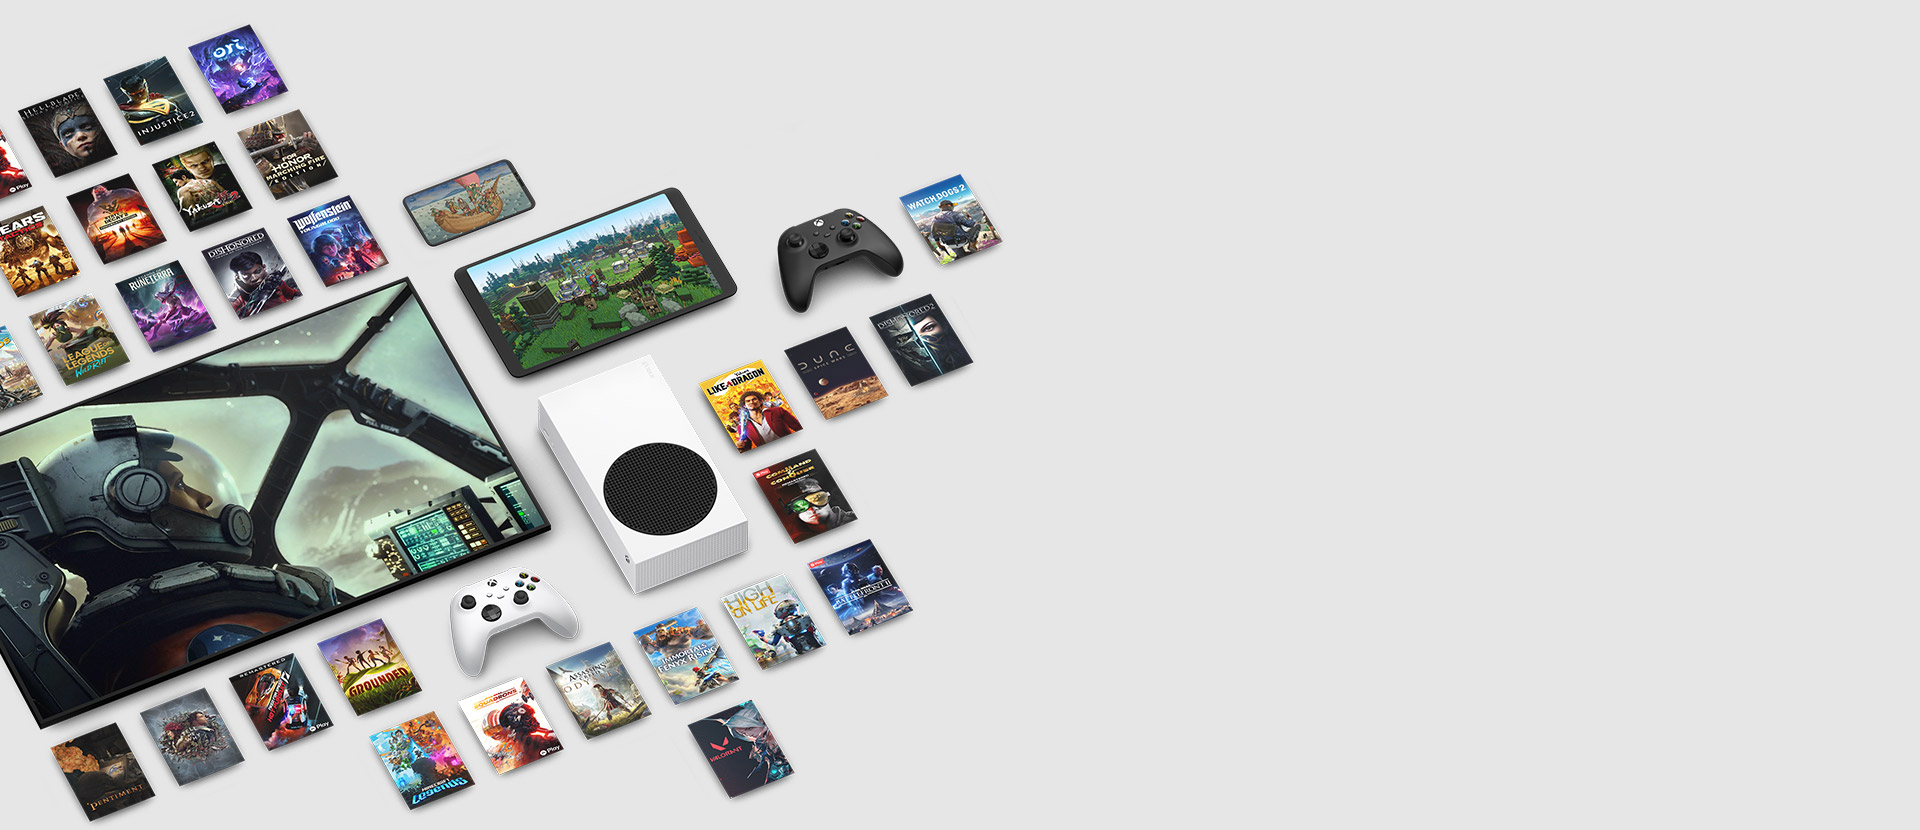 Spilkunst fra flere spil, der fås nu med Xbox Game Pass Ultimate, omgiver flere enheder, herunder en konsol, en telefon, en tablet, et smart tv og controllere.